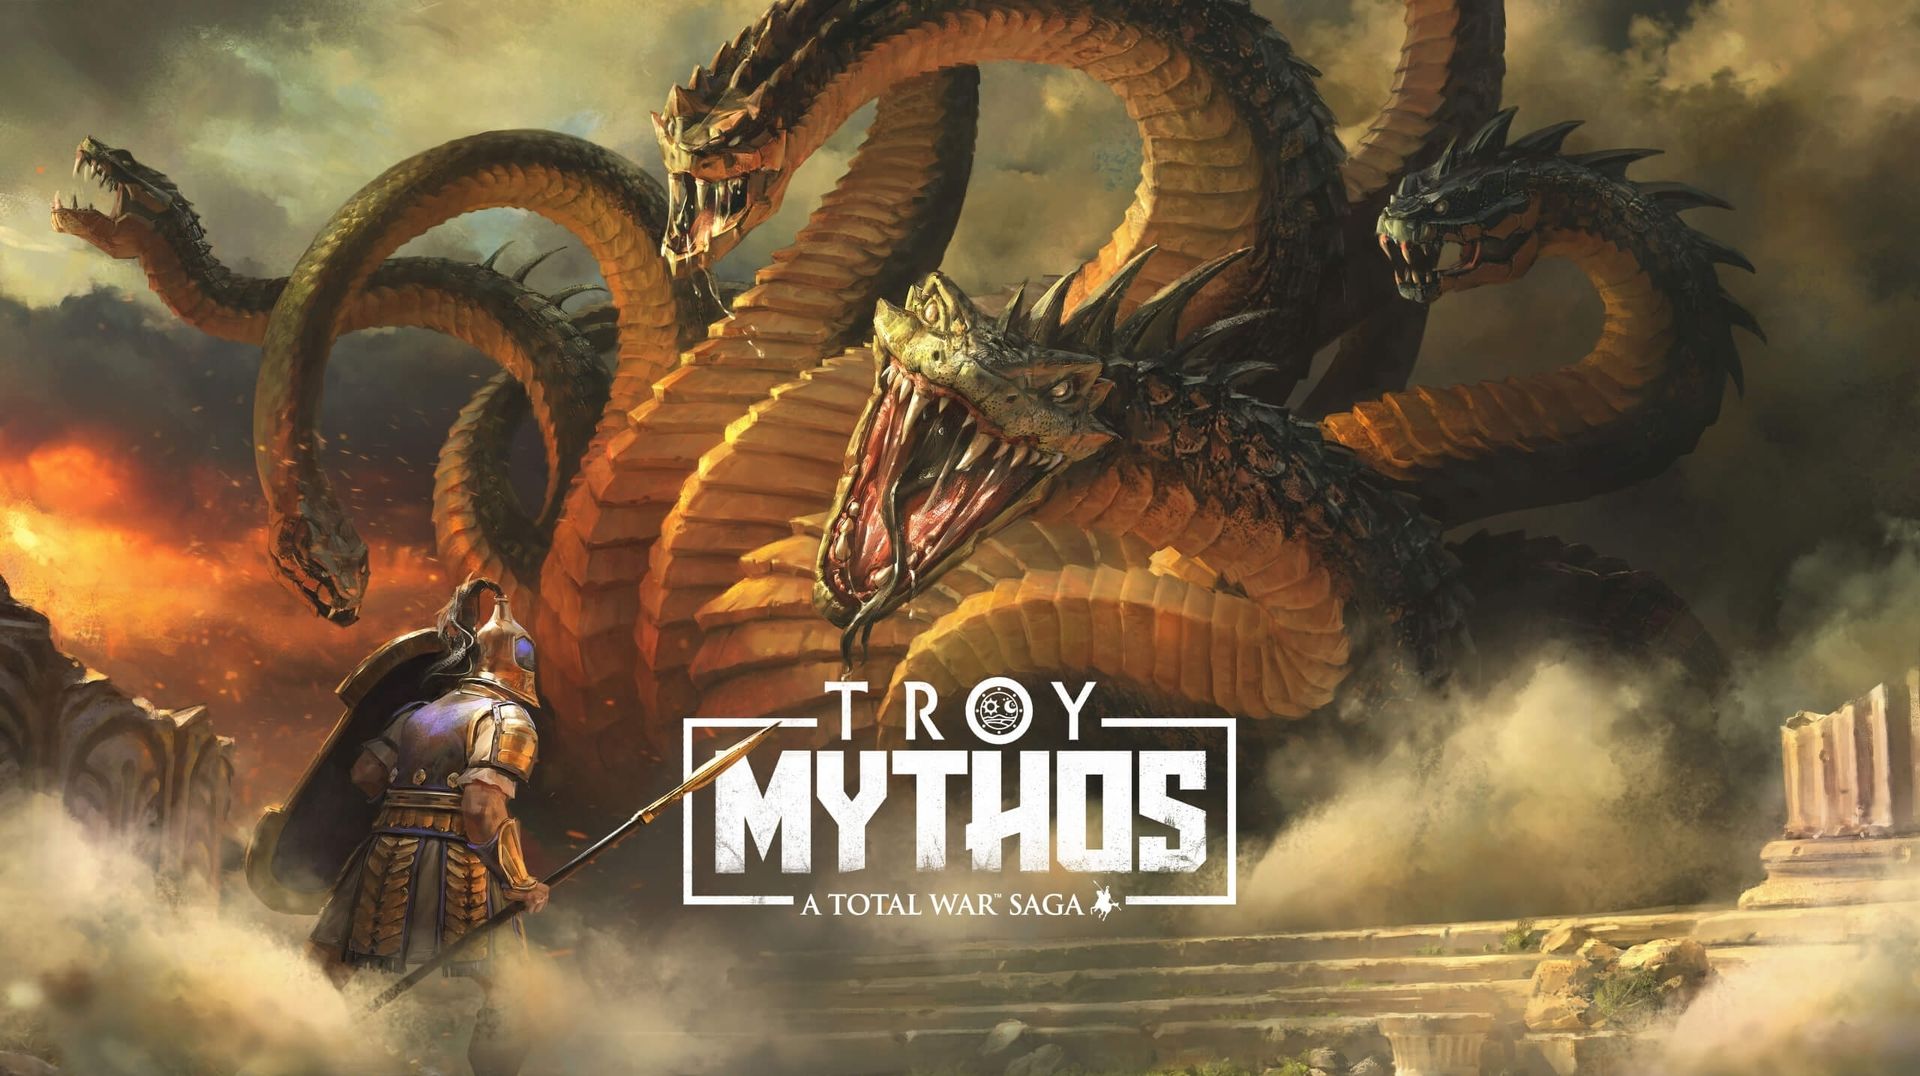 free download troy total war mythos